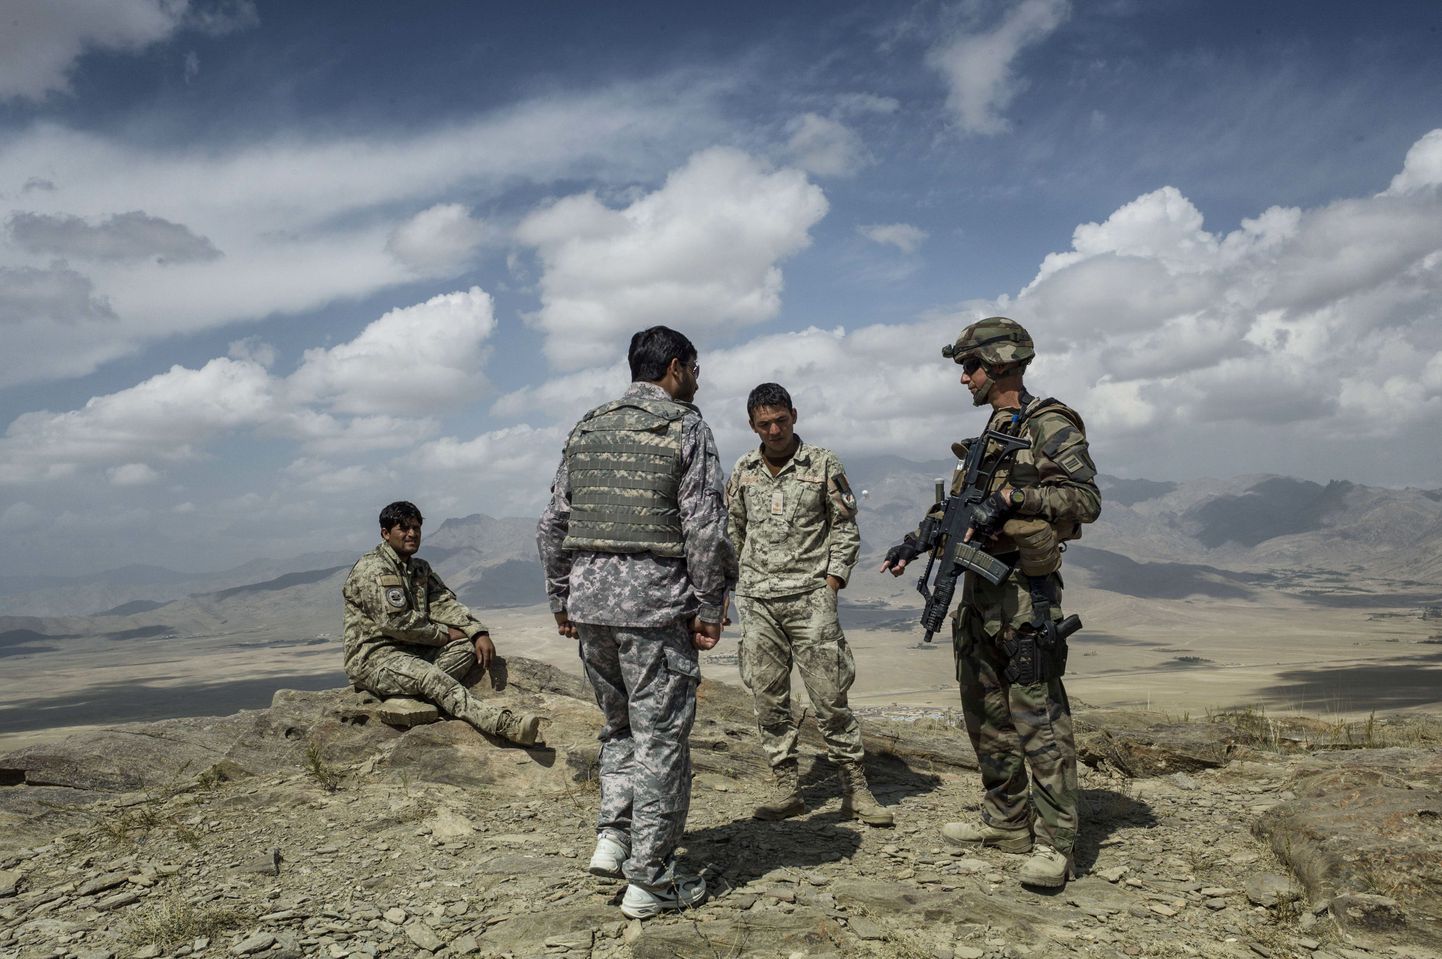 Prantsuse sõdur (paremal) afgaanidega sel nädalal Wardaki provintsis perimeetrit kindlustamas.